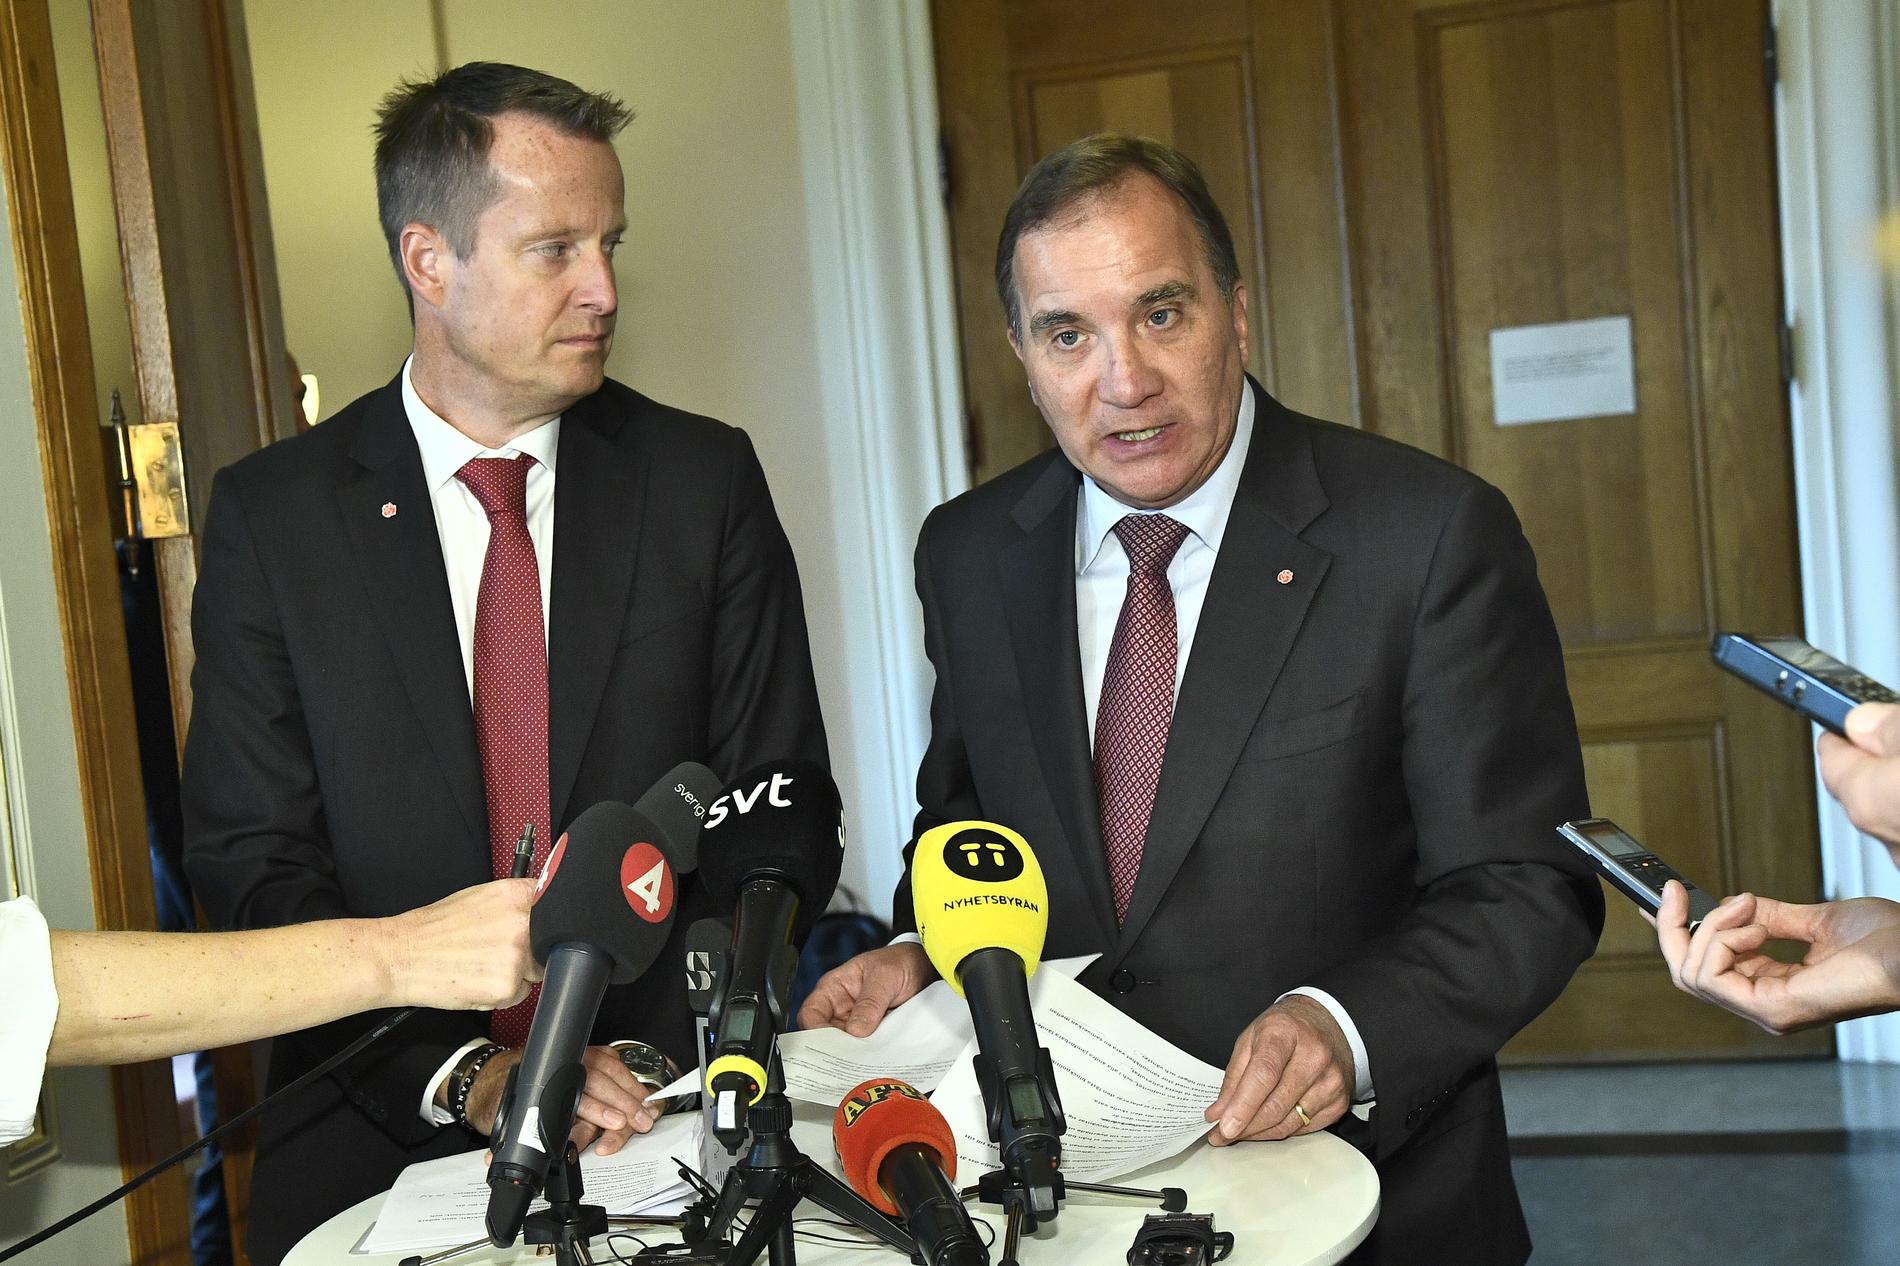 Anders Ygeman (S), Socialdemokraternas gruppledare i riksdagen, och statsminister Stefan Löfven (S), meddelar att S vill ha överläggningar med de borgerliga partierna om vem som ska bli ny talman.